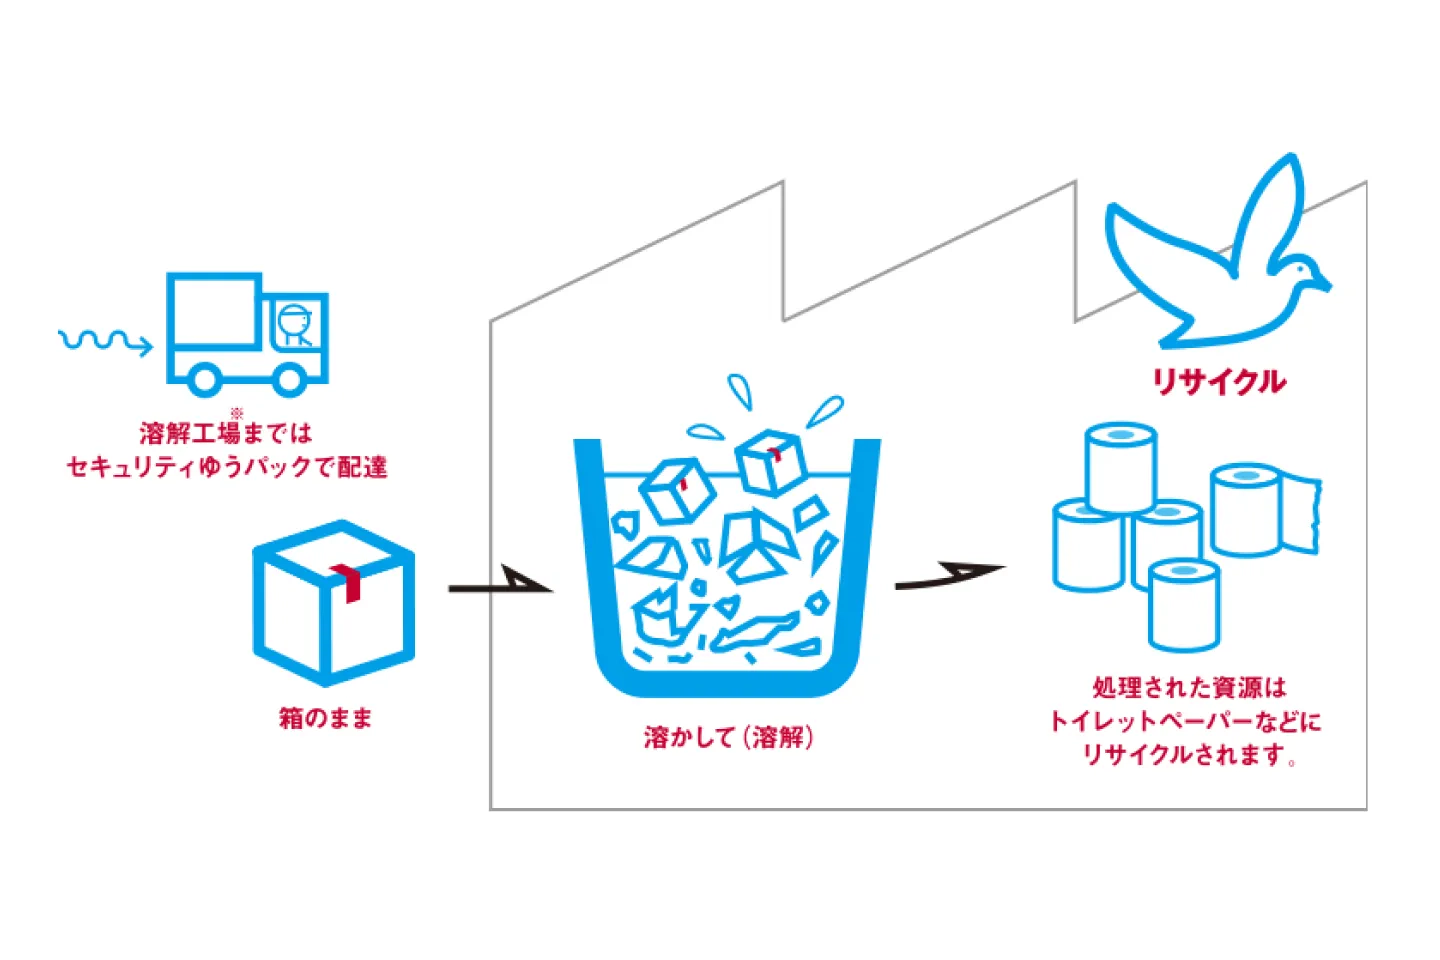 日本郵便の溶解サービスについてのイラスト